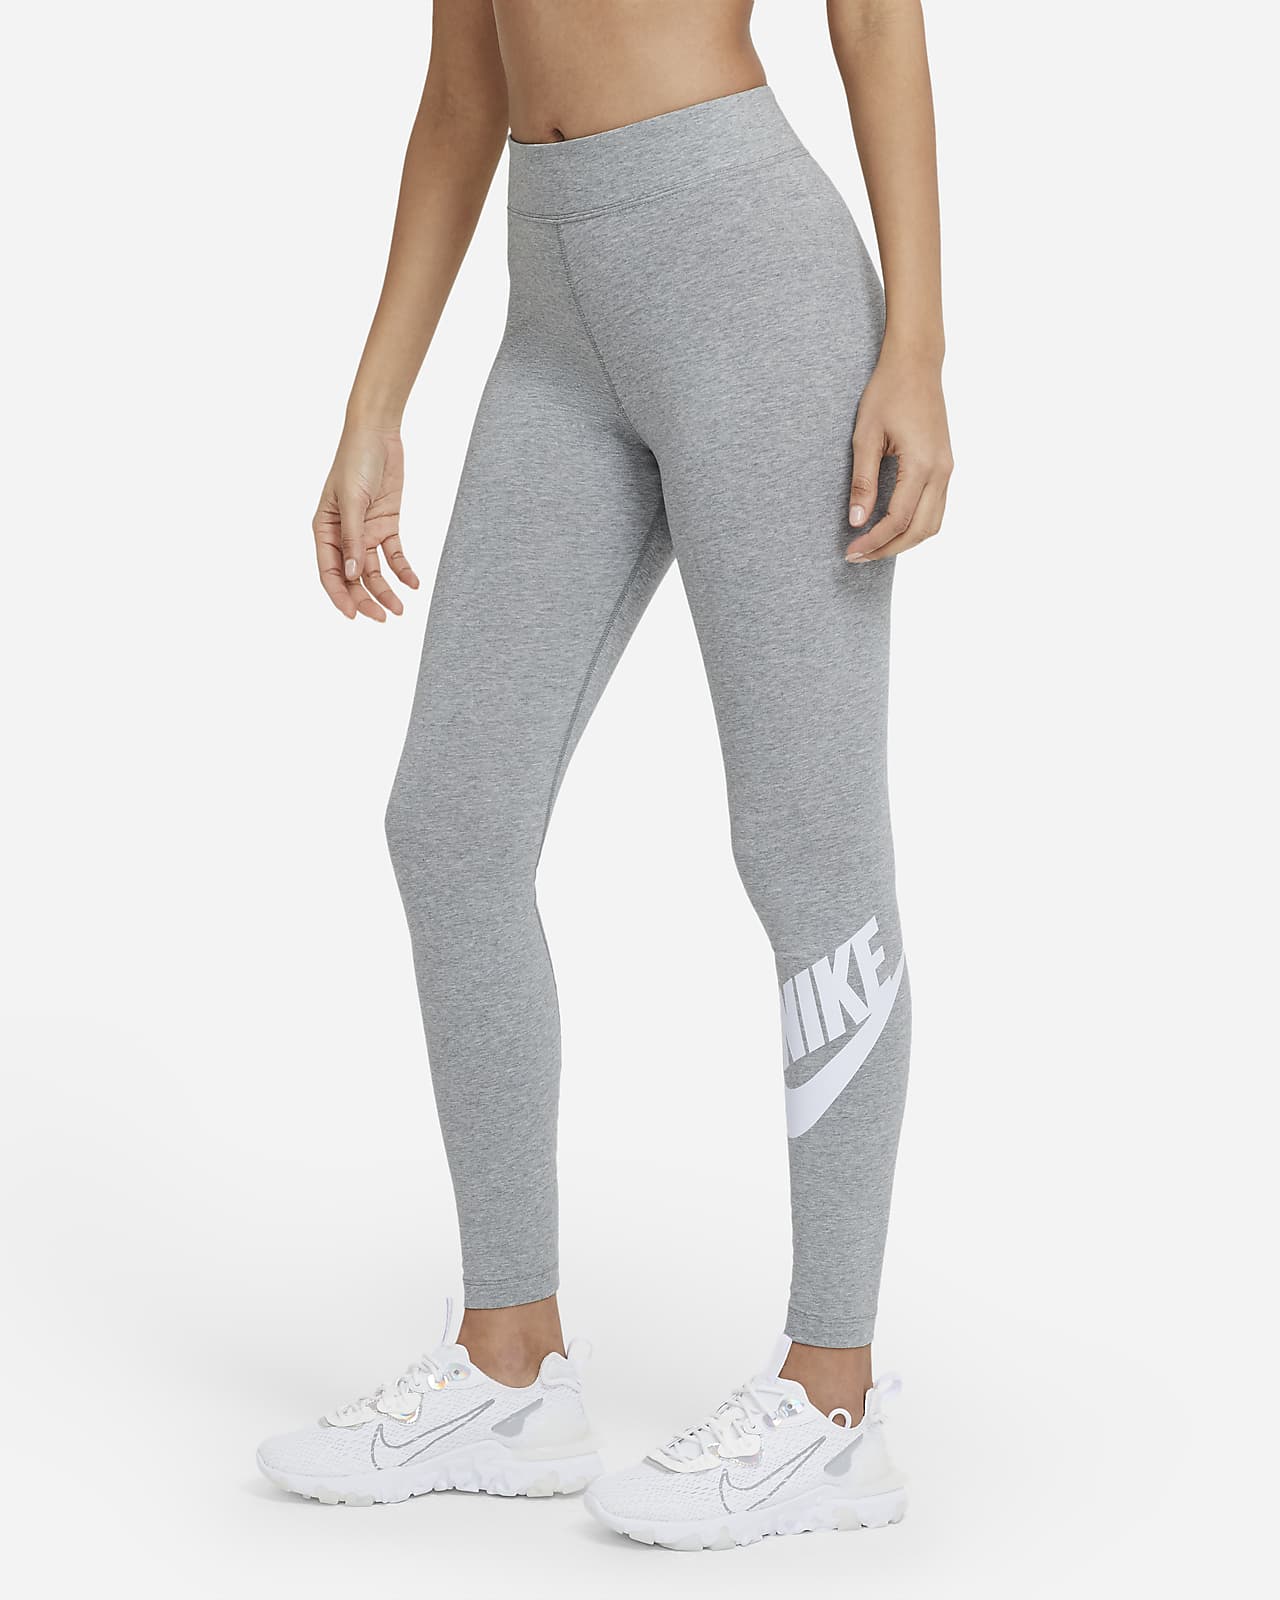 Legginsy damskie Nike Sportswear Women niebiesko-różowo-białe CJ3693 480